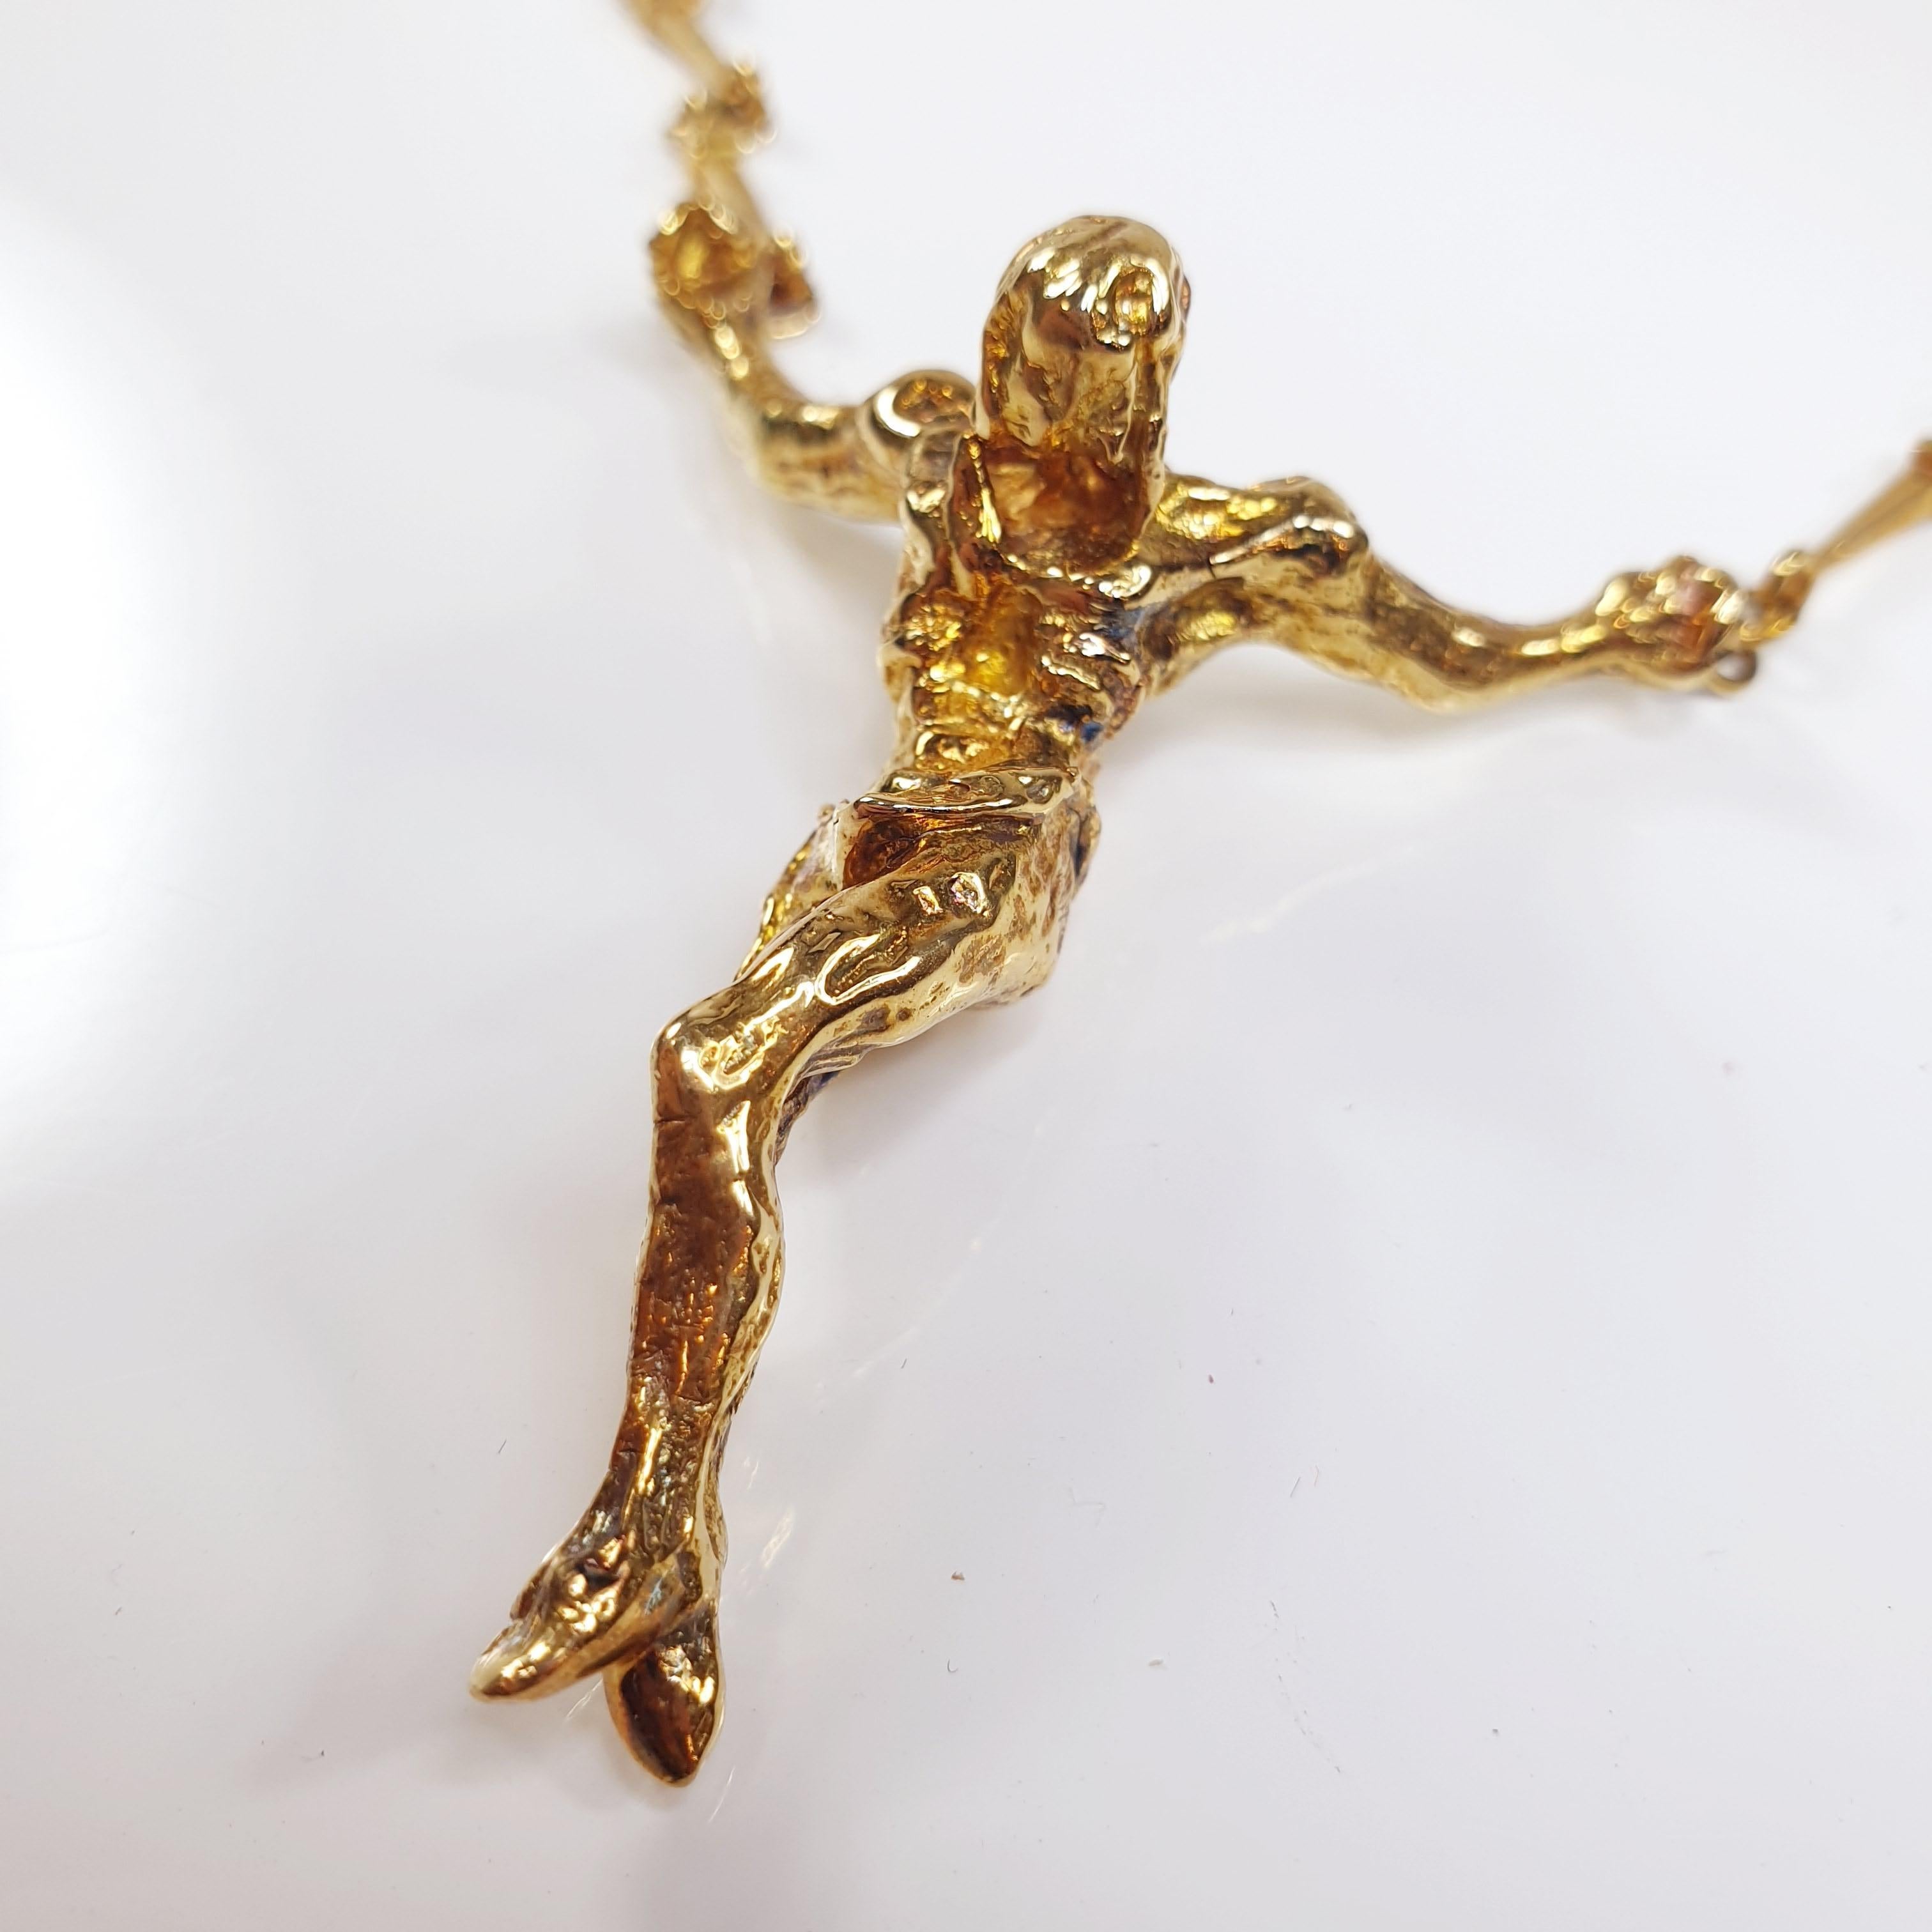 Edition limitée en or jaune 18k Salvador Dali Christ Saint John sur la Croix Collier / Bracelet 
Il s'agit d'une édition limitée et numérotée des années 1970, numérotée 108 sur 1000.
Ce collier est accompagné d'une pochette et d'un cadre